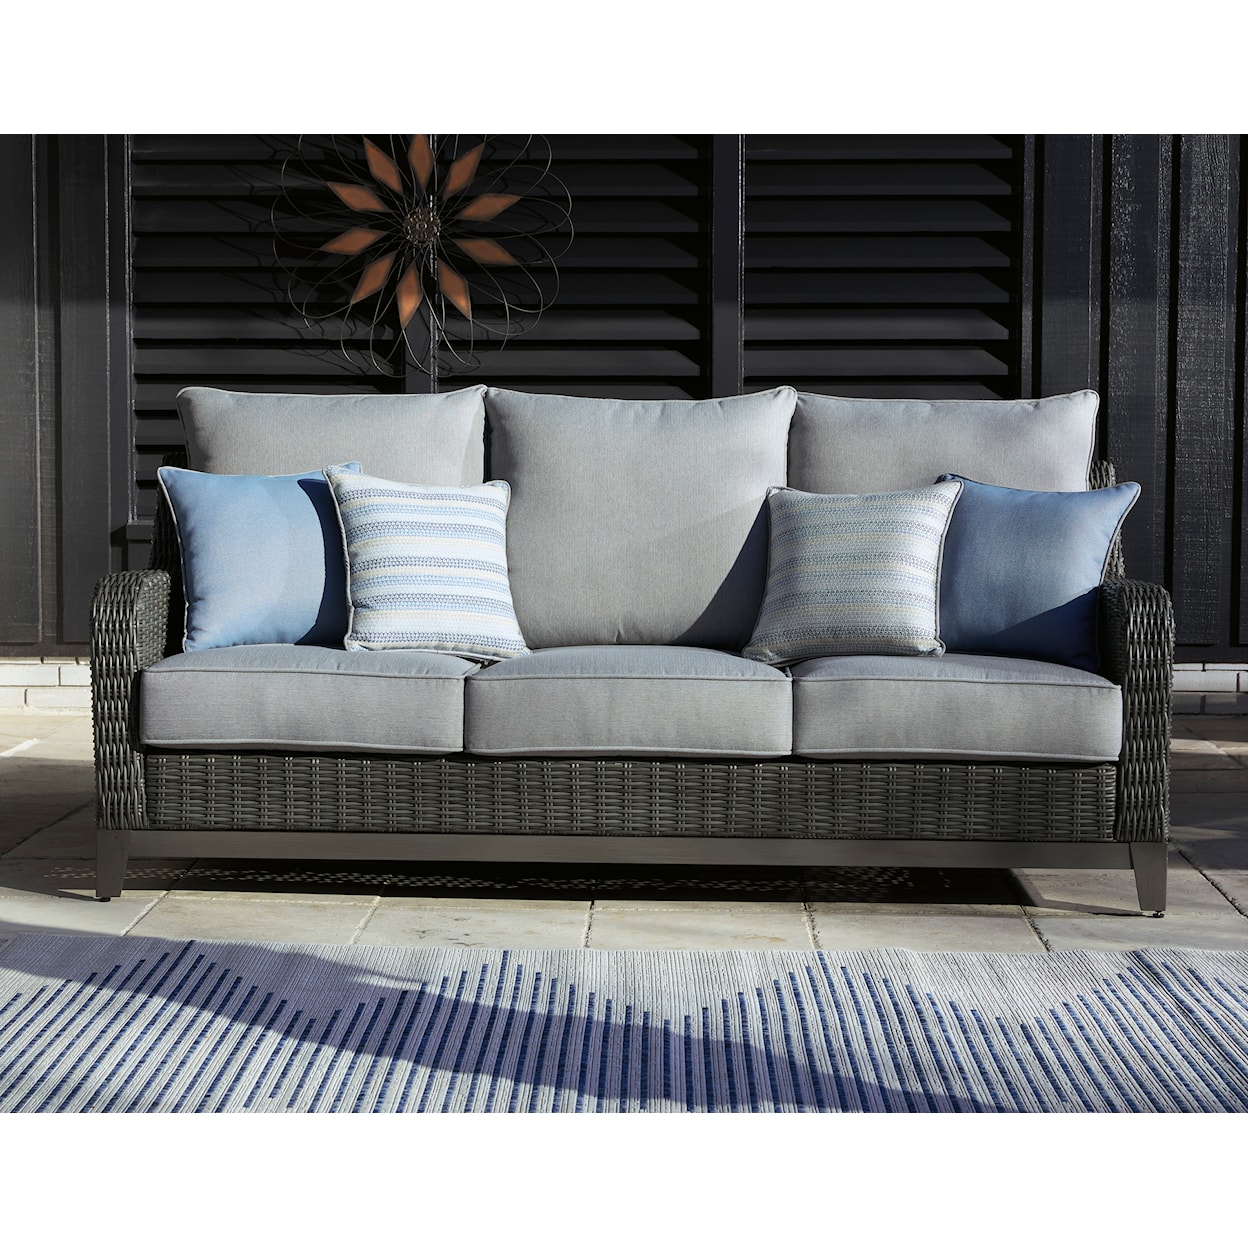 Signature Design Elite Park Outdoor Sofa with Cushion